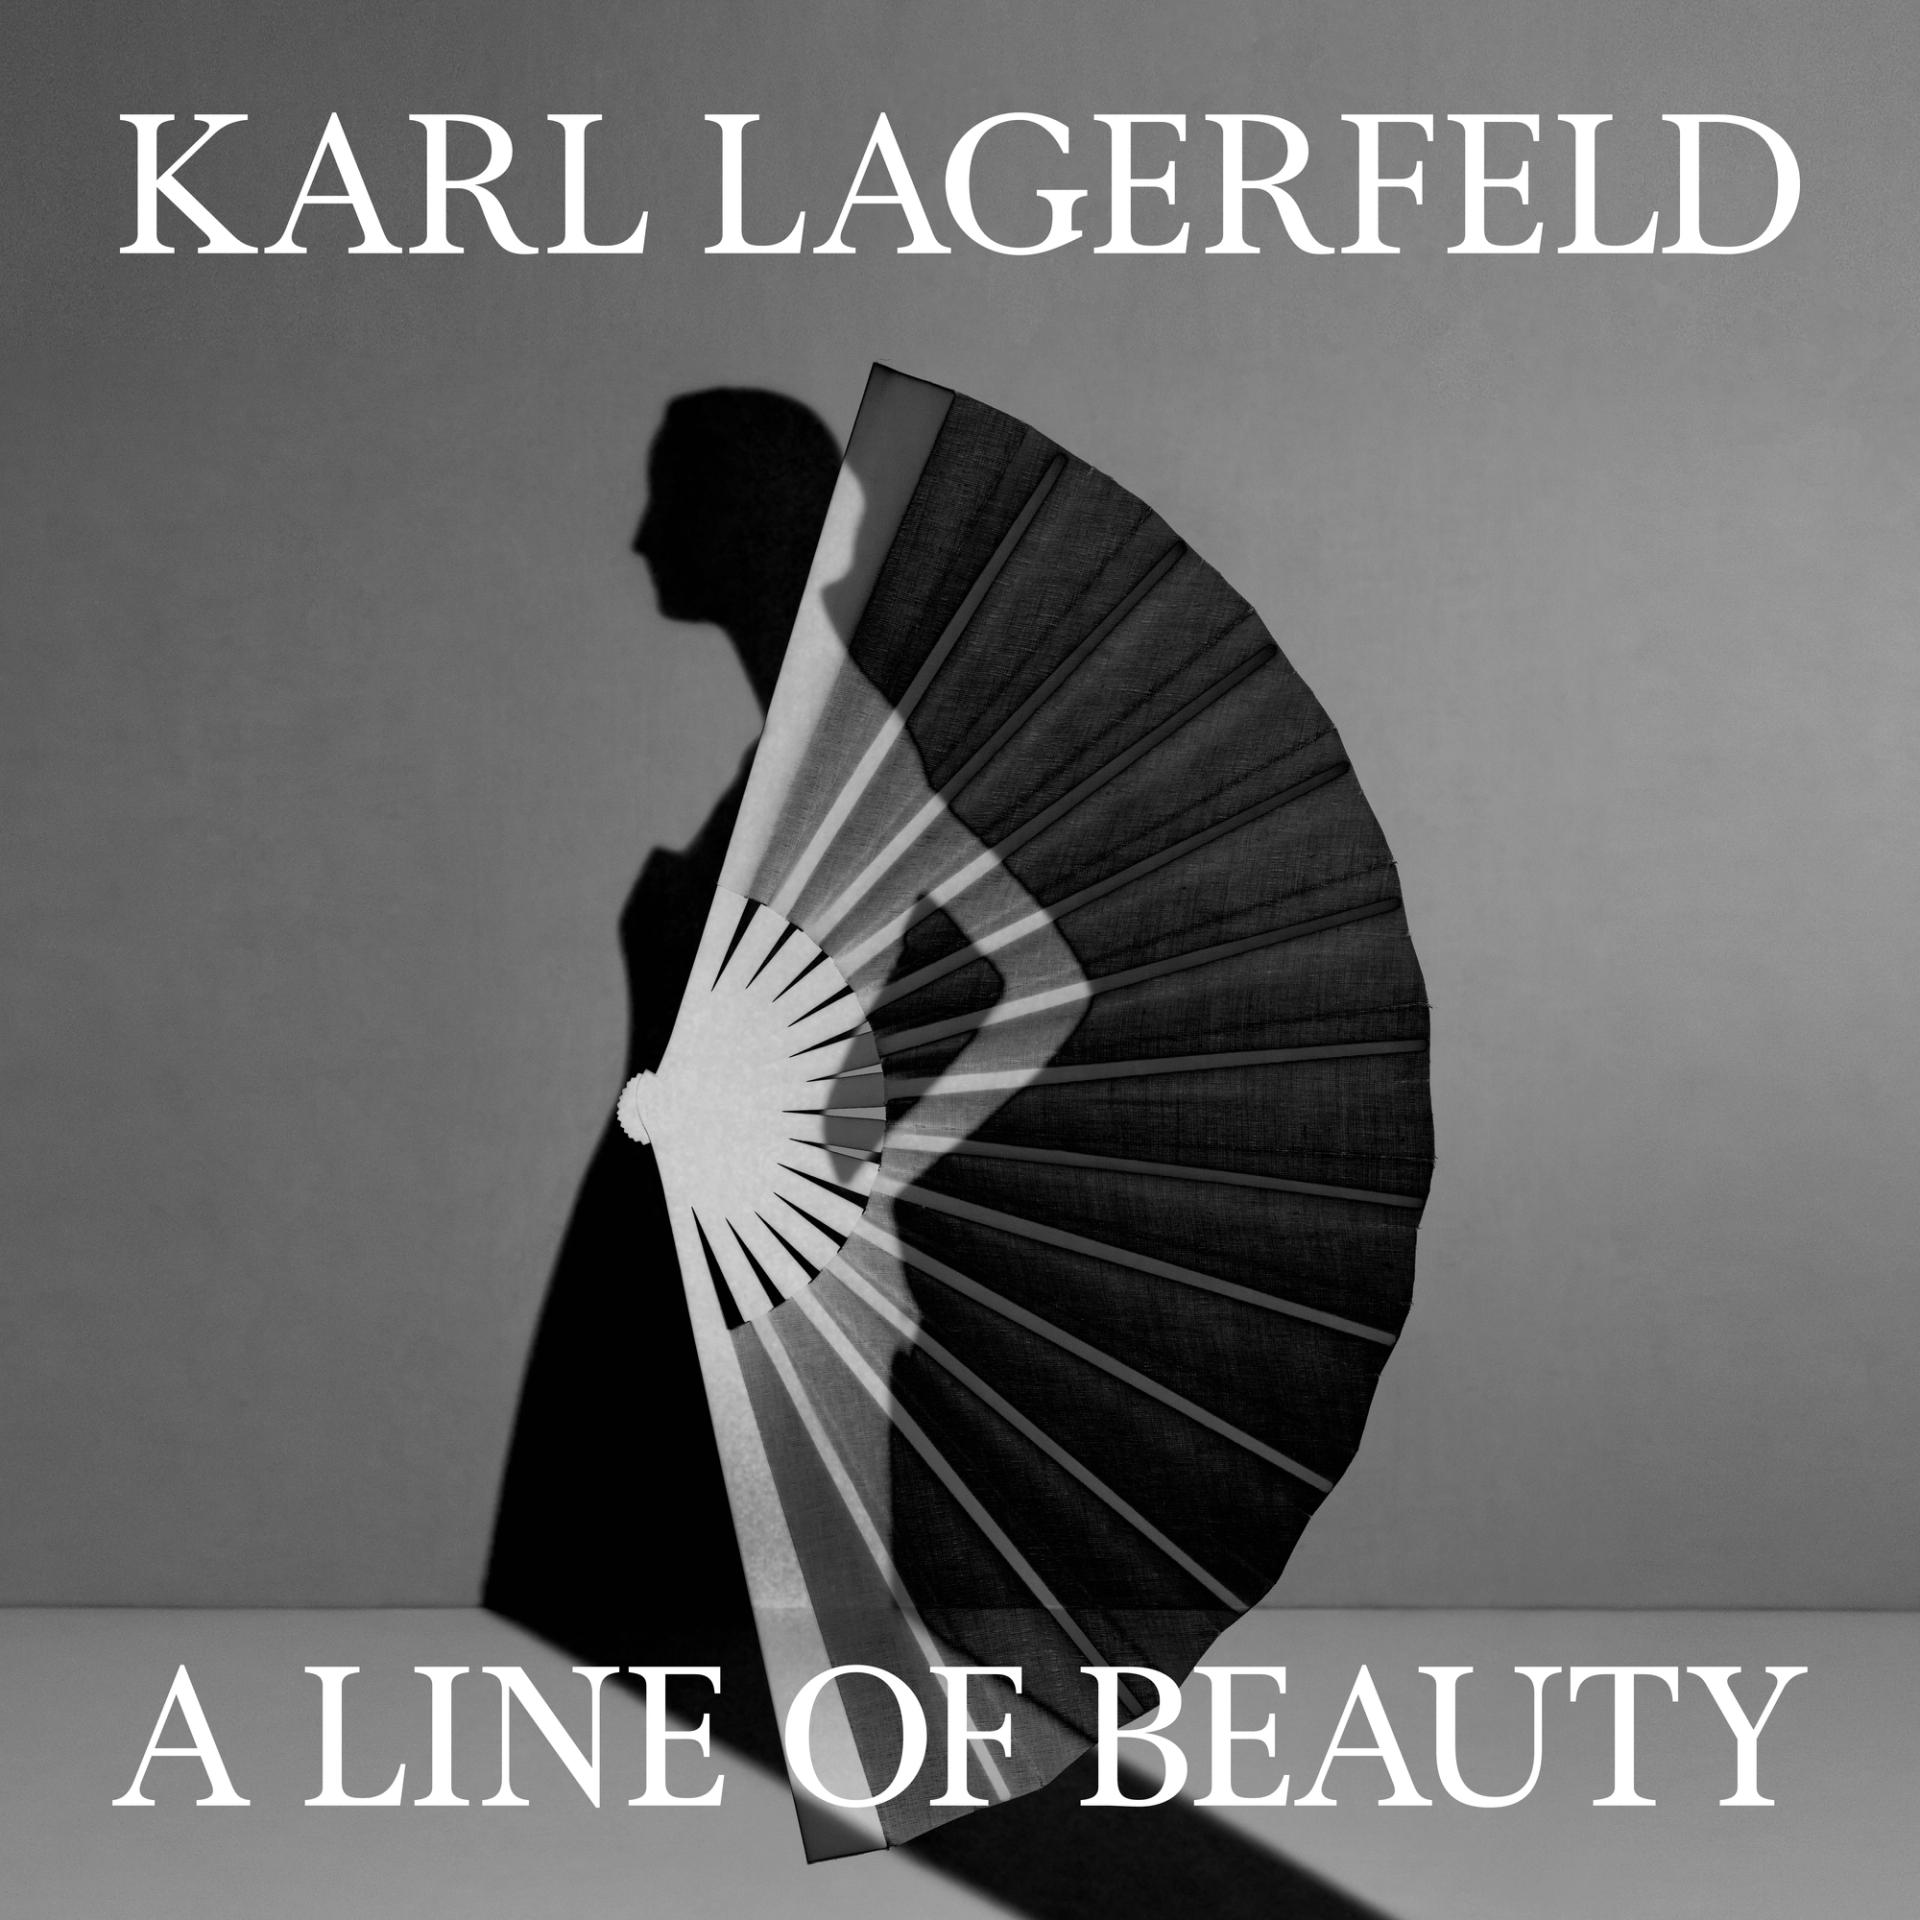 纽约大都会博物馆 Karl Lagerfeld 纪念展进行中，策展构想和相关视频一览